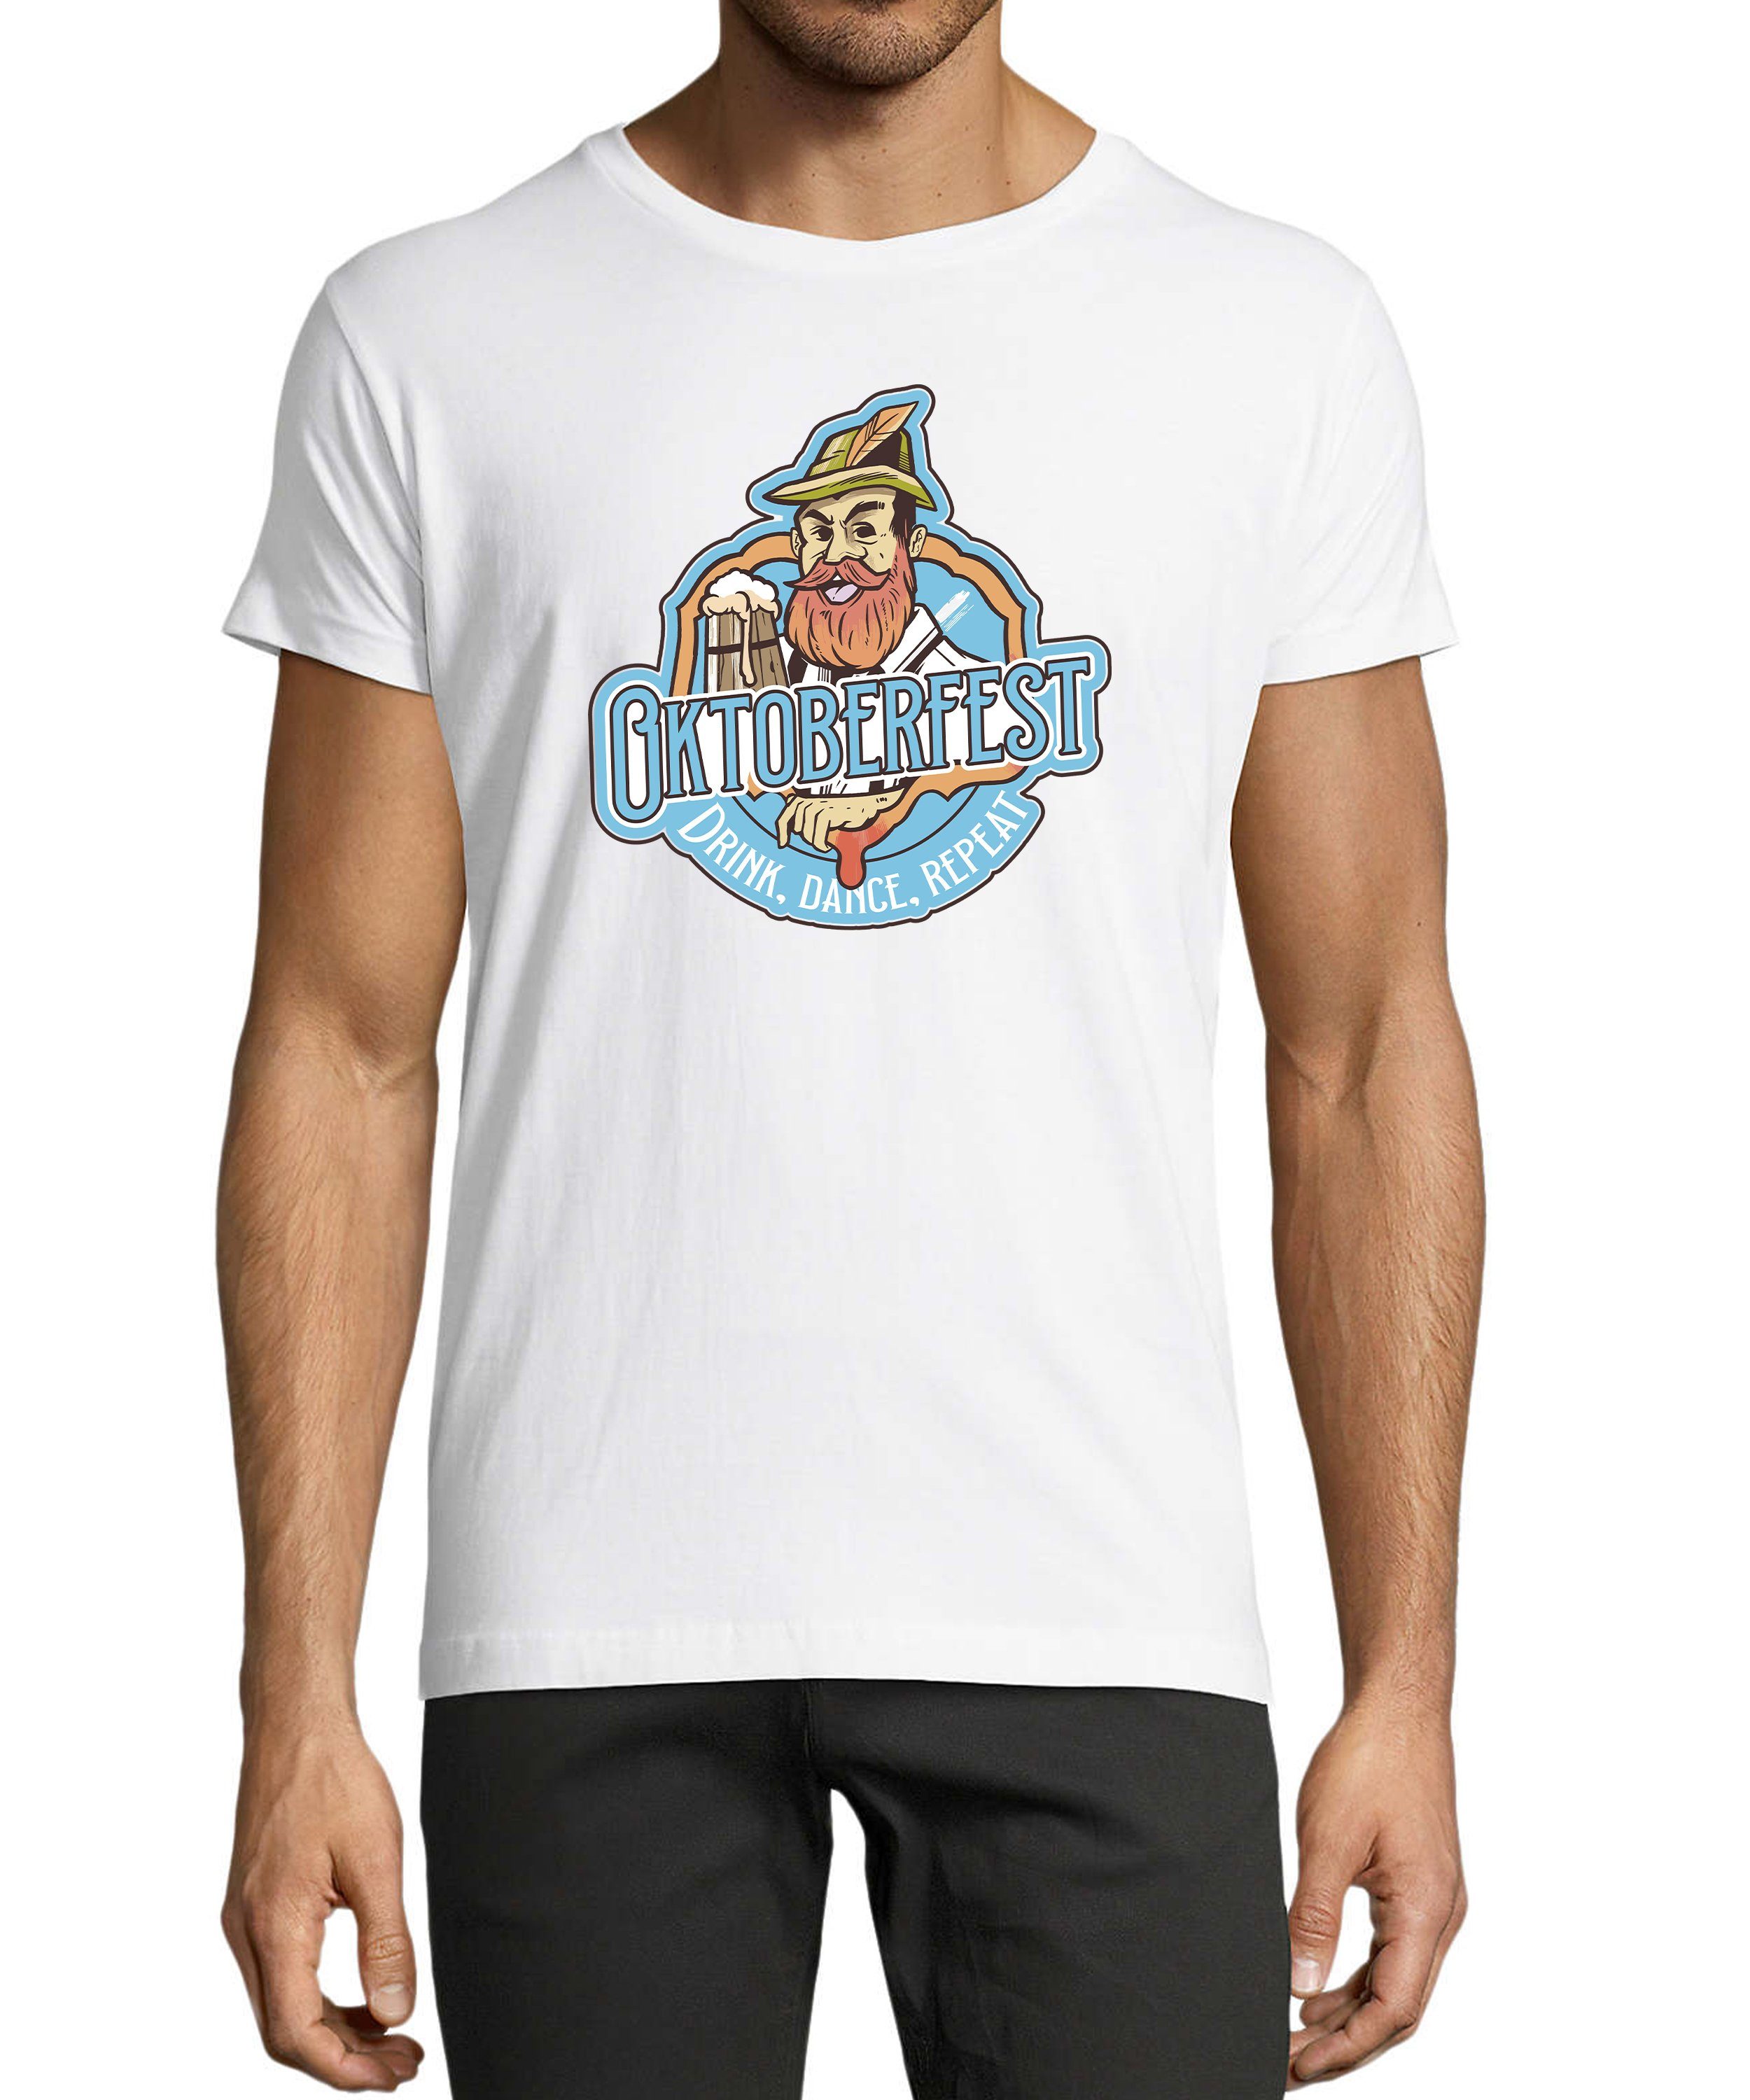 MyDesign24 T-Shirt Herren Fun Print Shirt - Trinkshirt Oktoberfest T-Shirt Baumwollshirt mit Aufdruck Regular Fit, i318 weiss